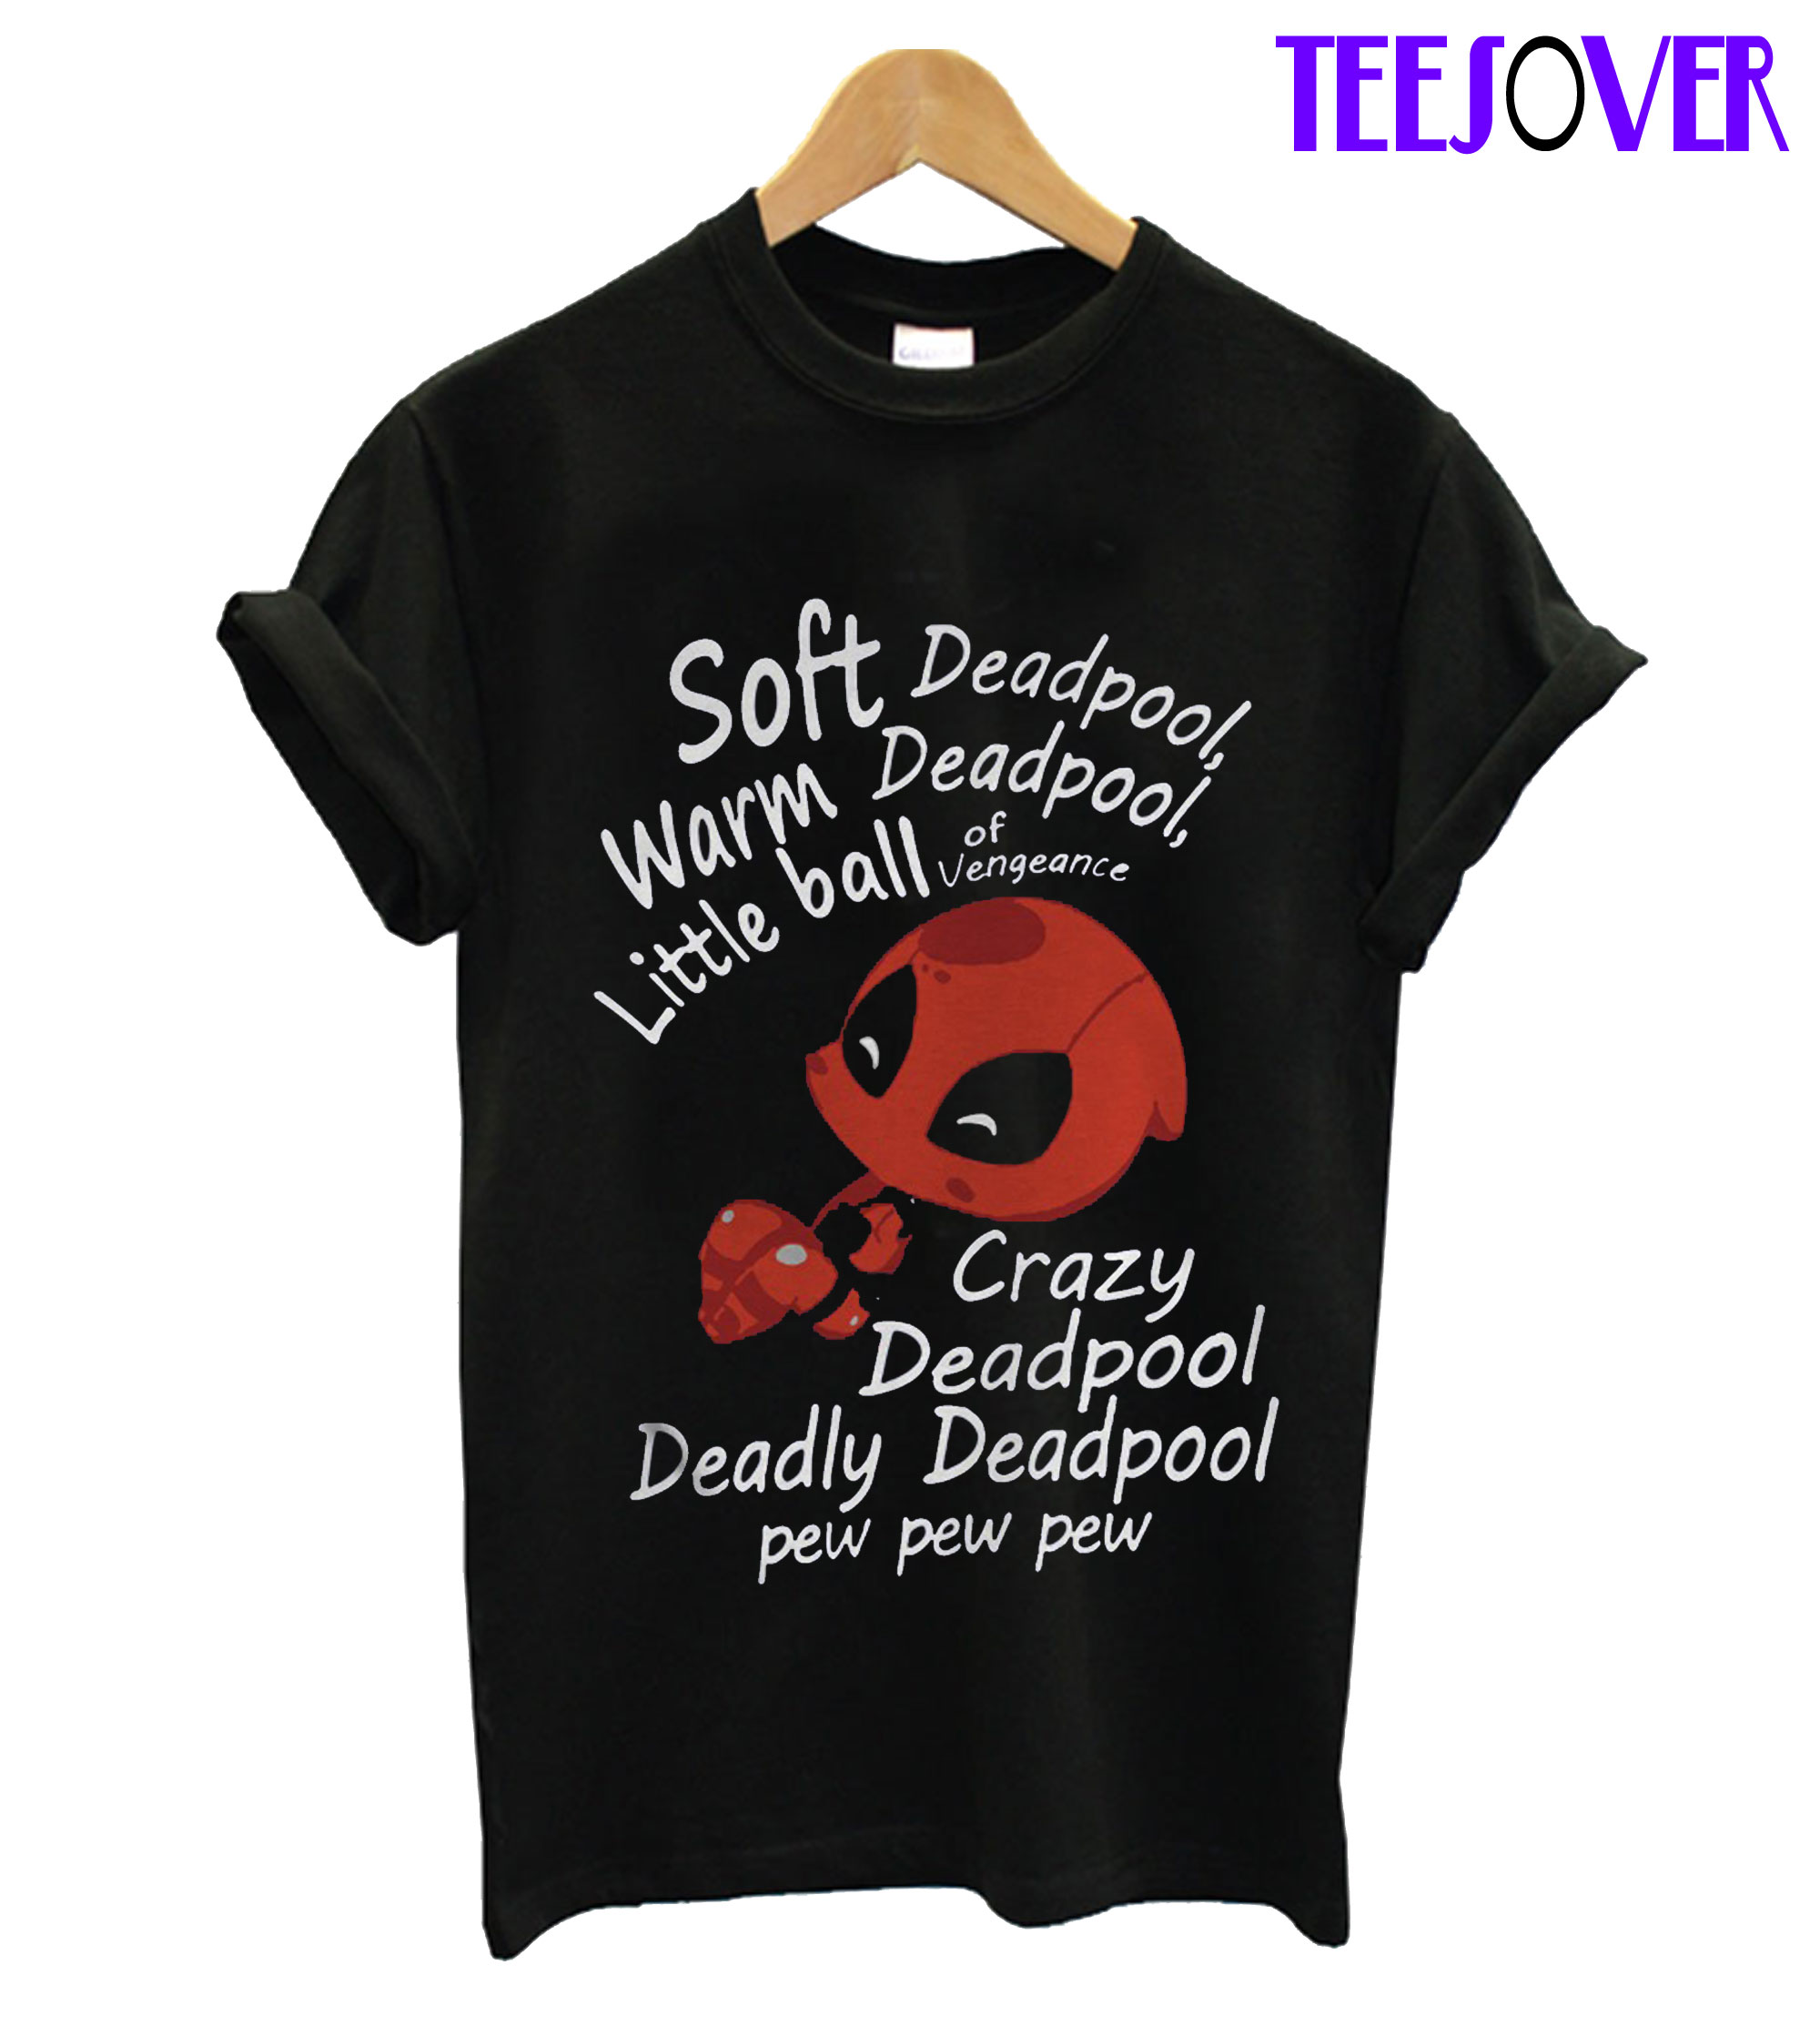 deadpool shirt